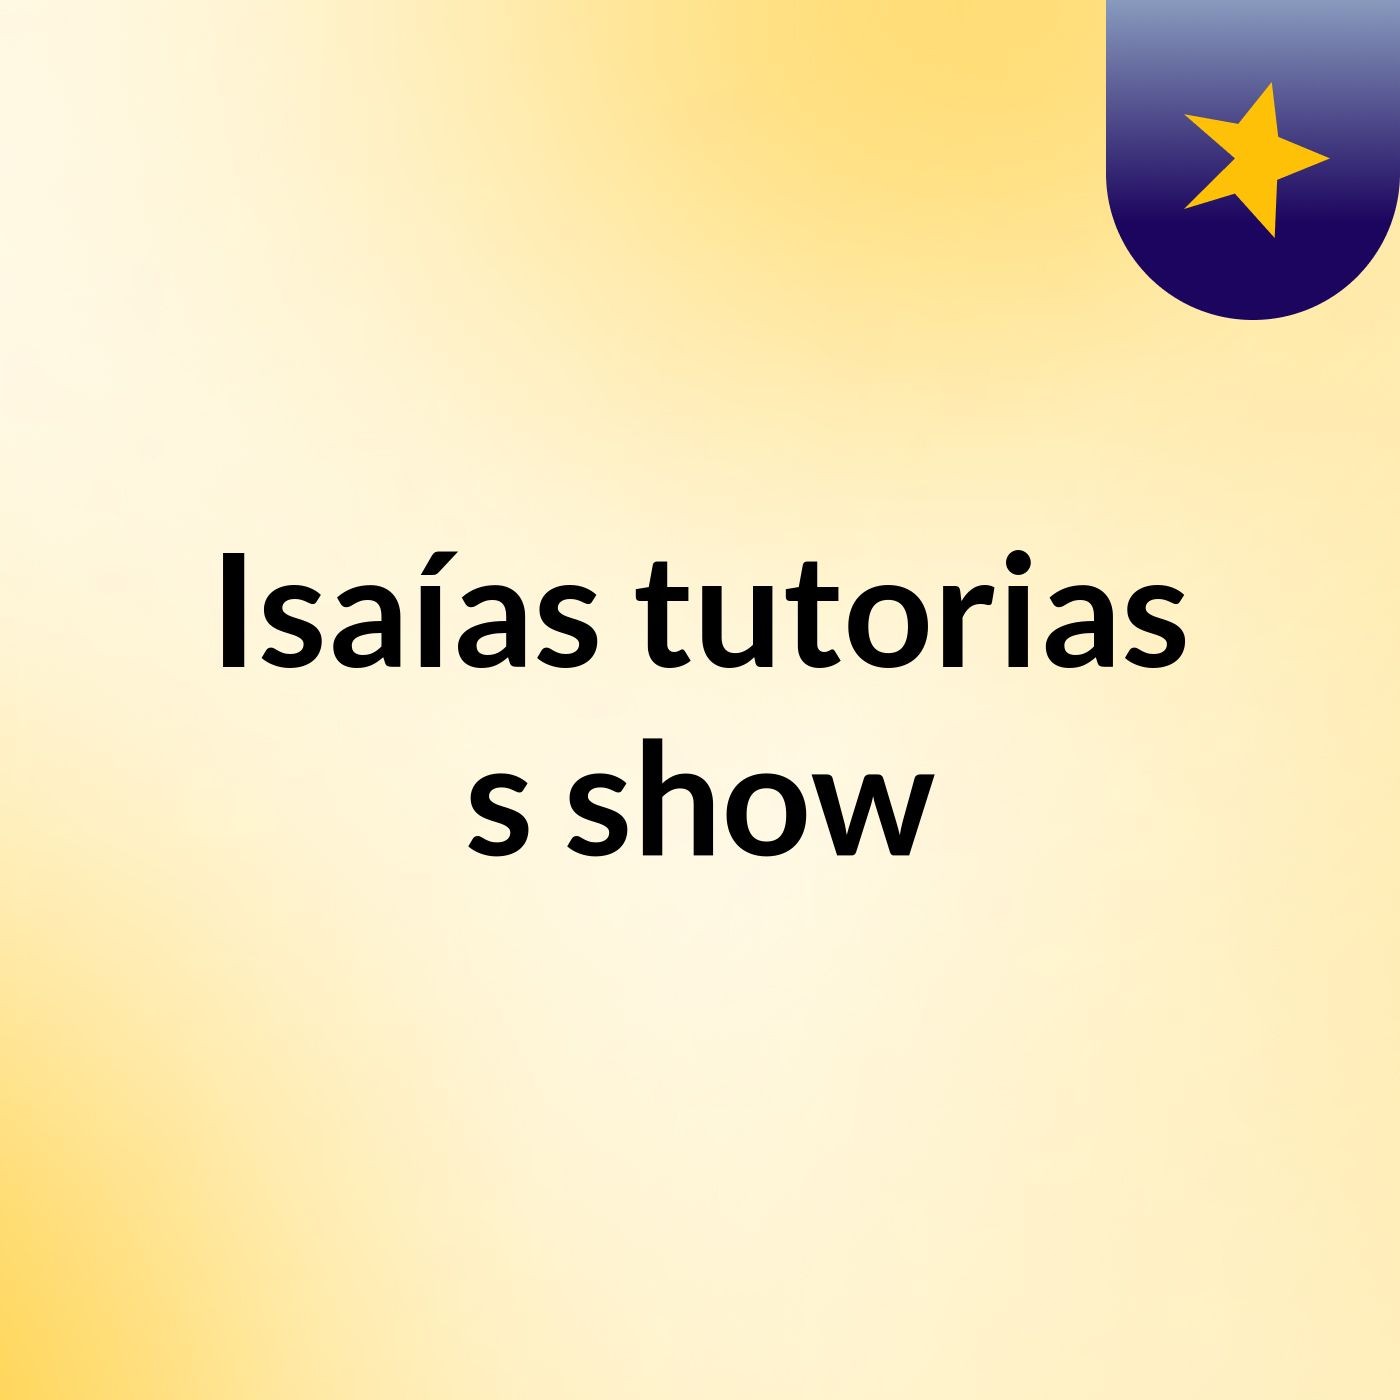 Isaías tutorias's show